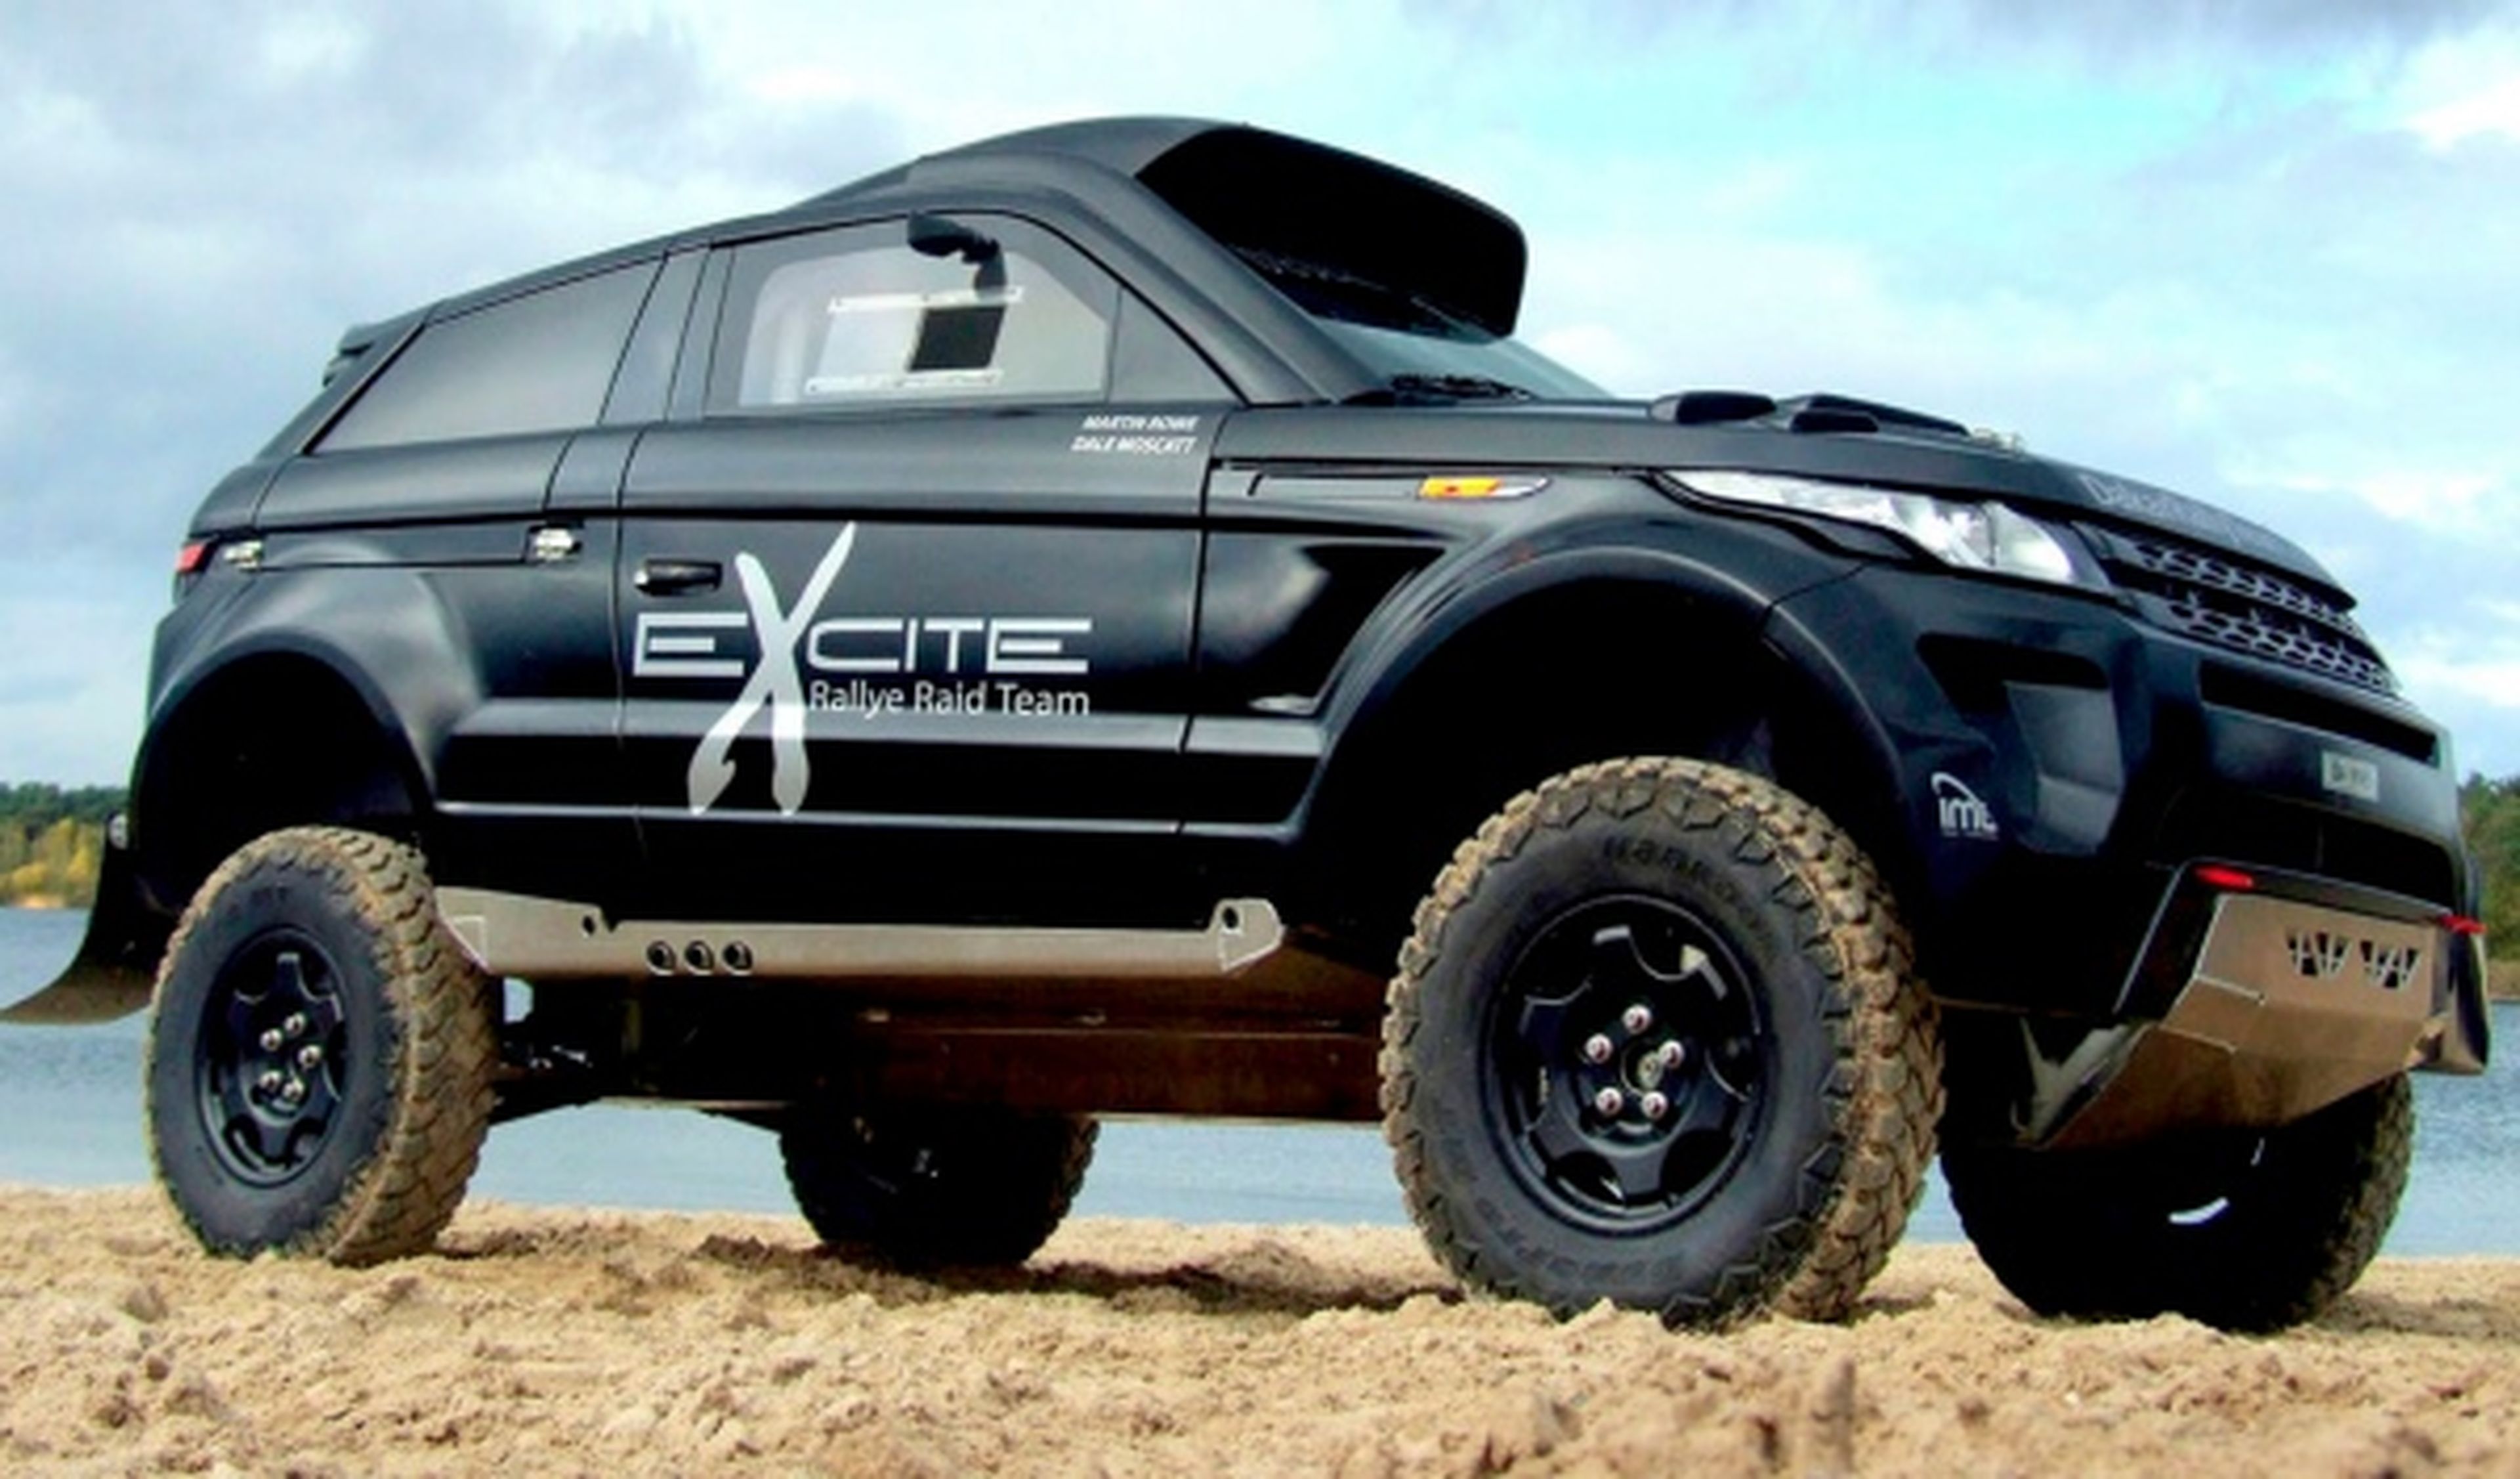 Range Rover Evoque Desert Warrior, preparado para el Dakar